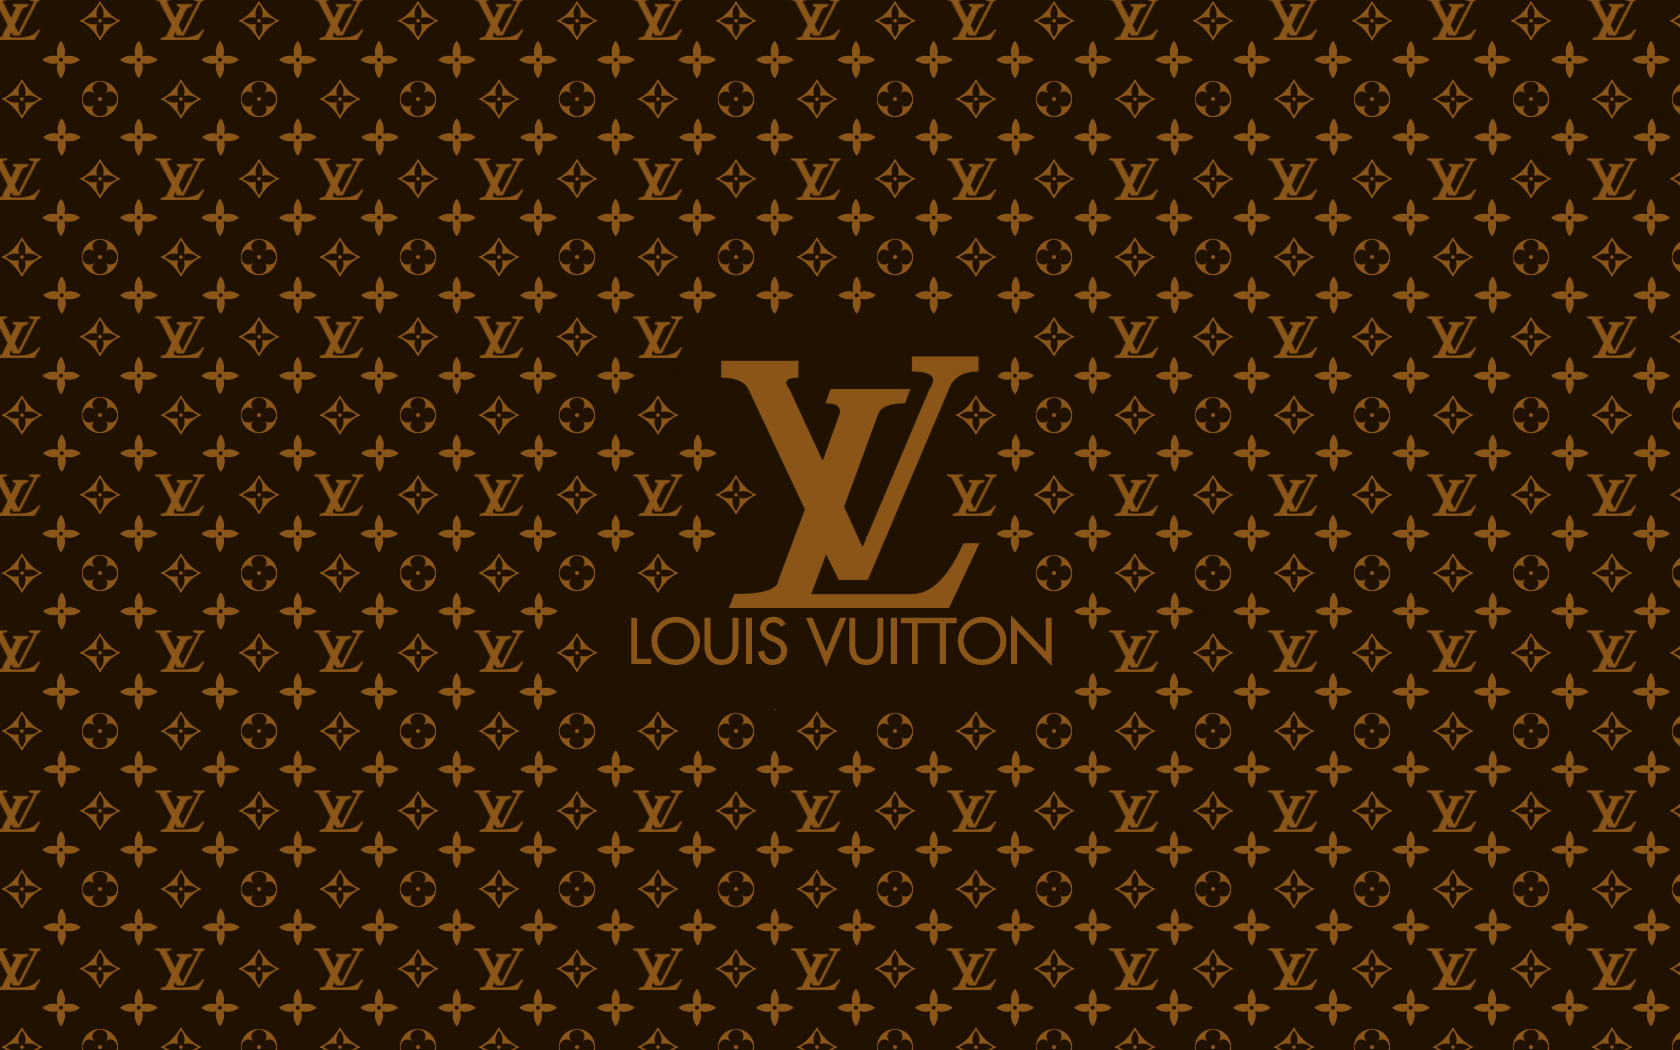 Borse fac simile Louis Vuitton, come riconoscere le imitazioni